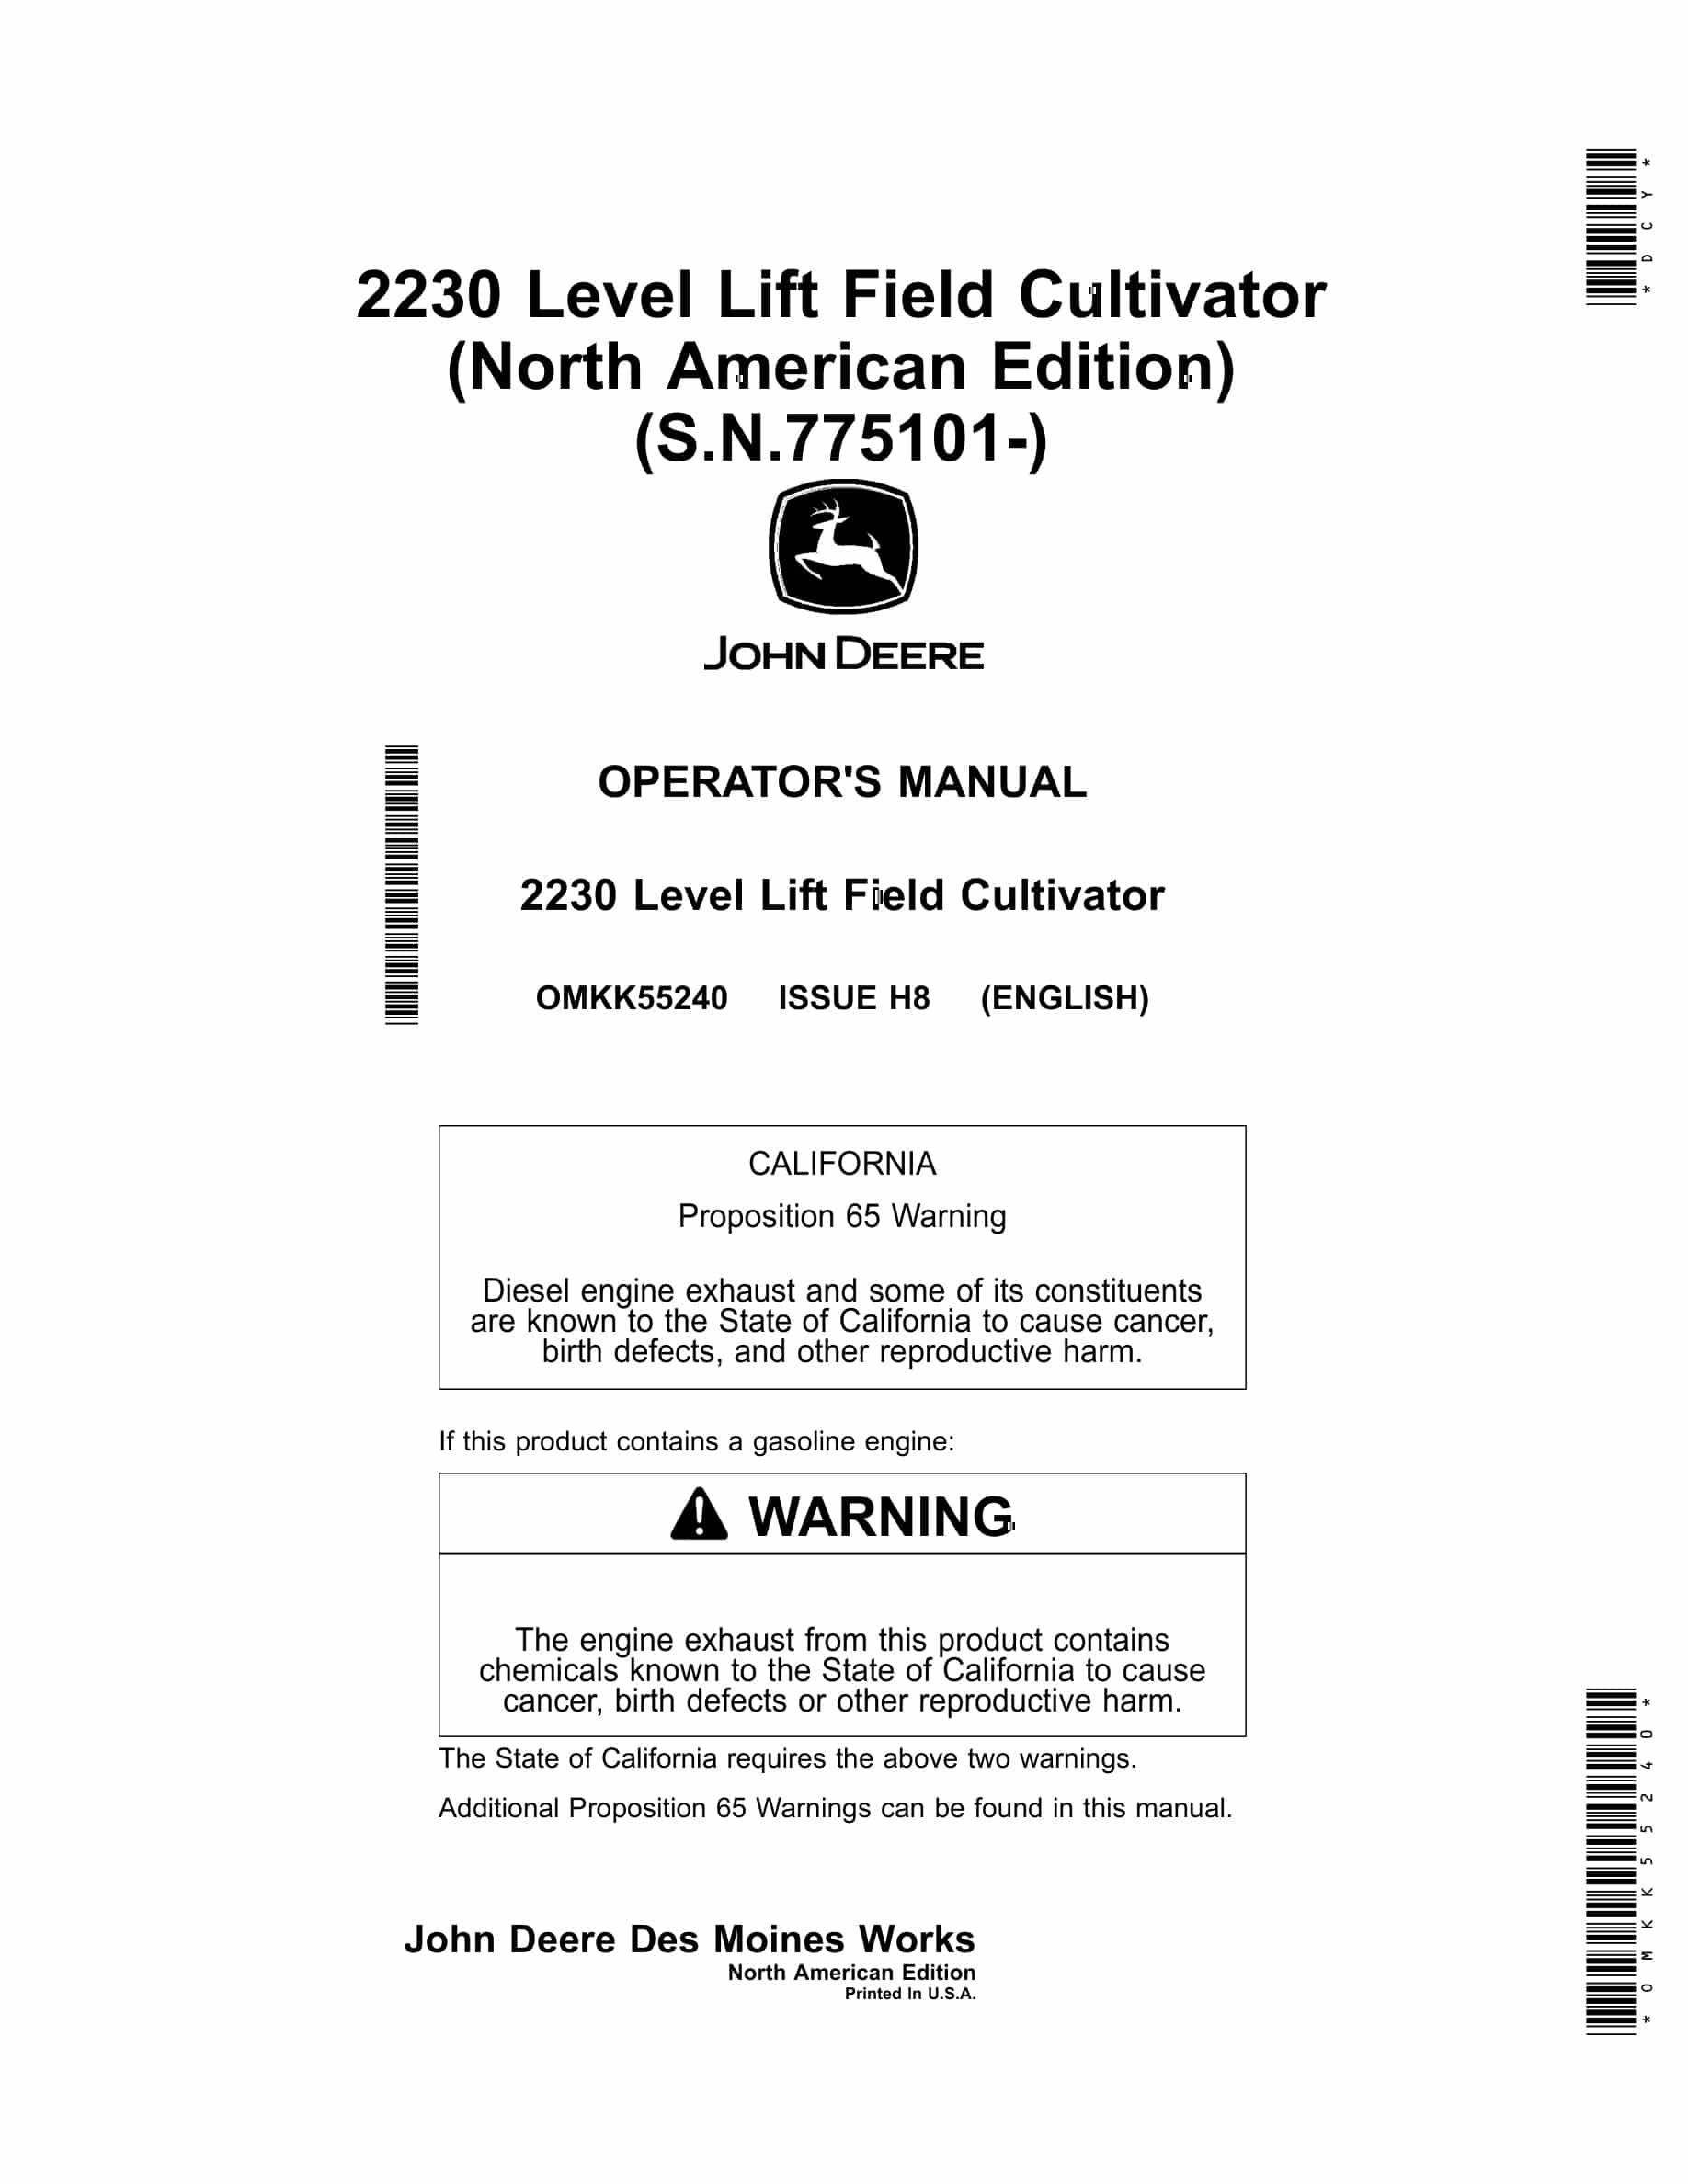 John Deere 2230 Level Lift Field Cultivator Operator Manual OMKK55240-1